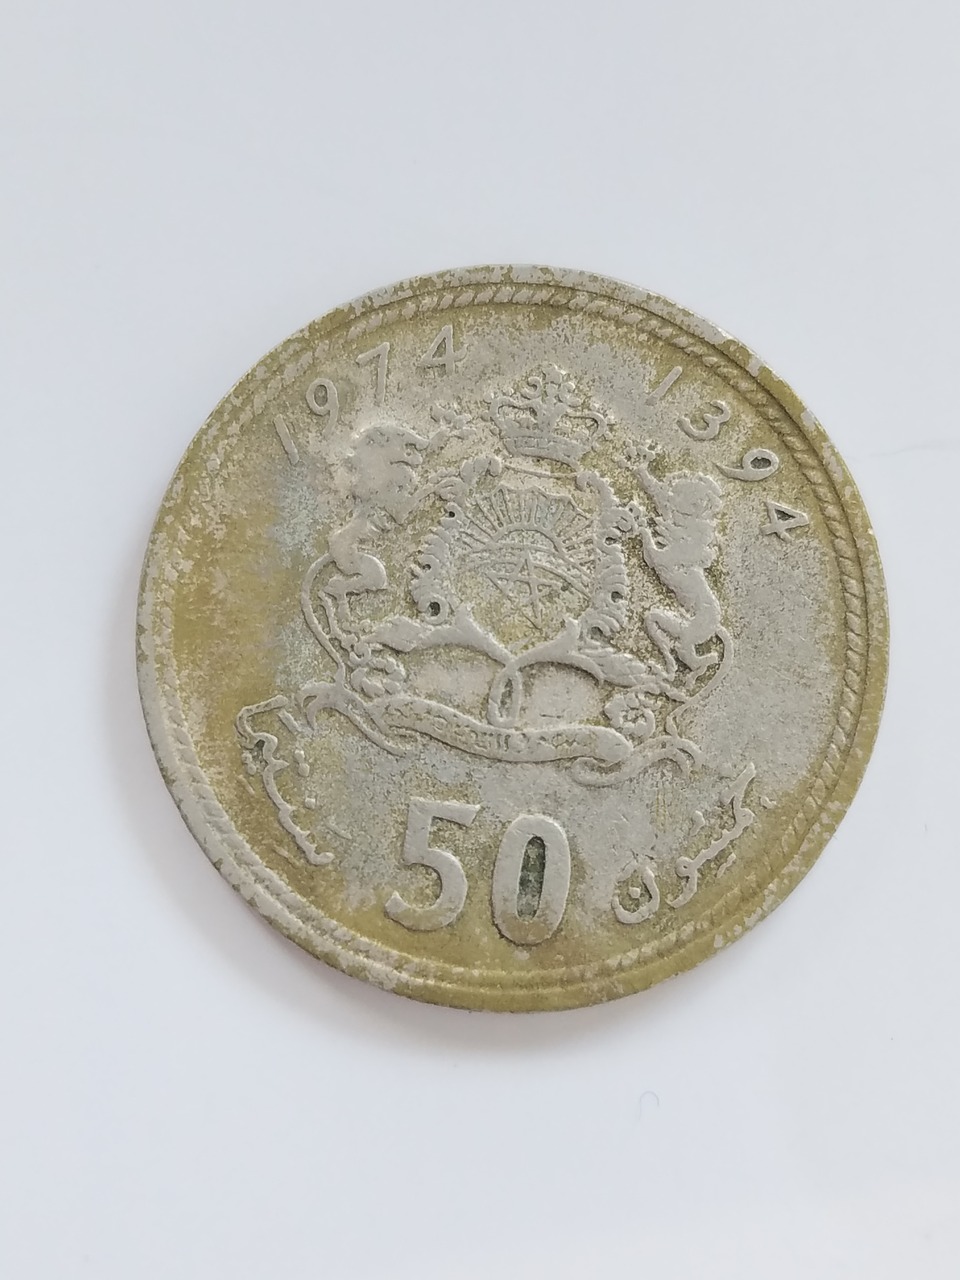 morocco moroccan coin coin free photo